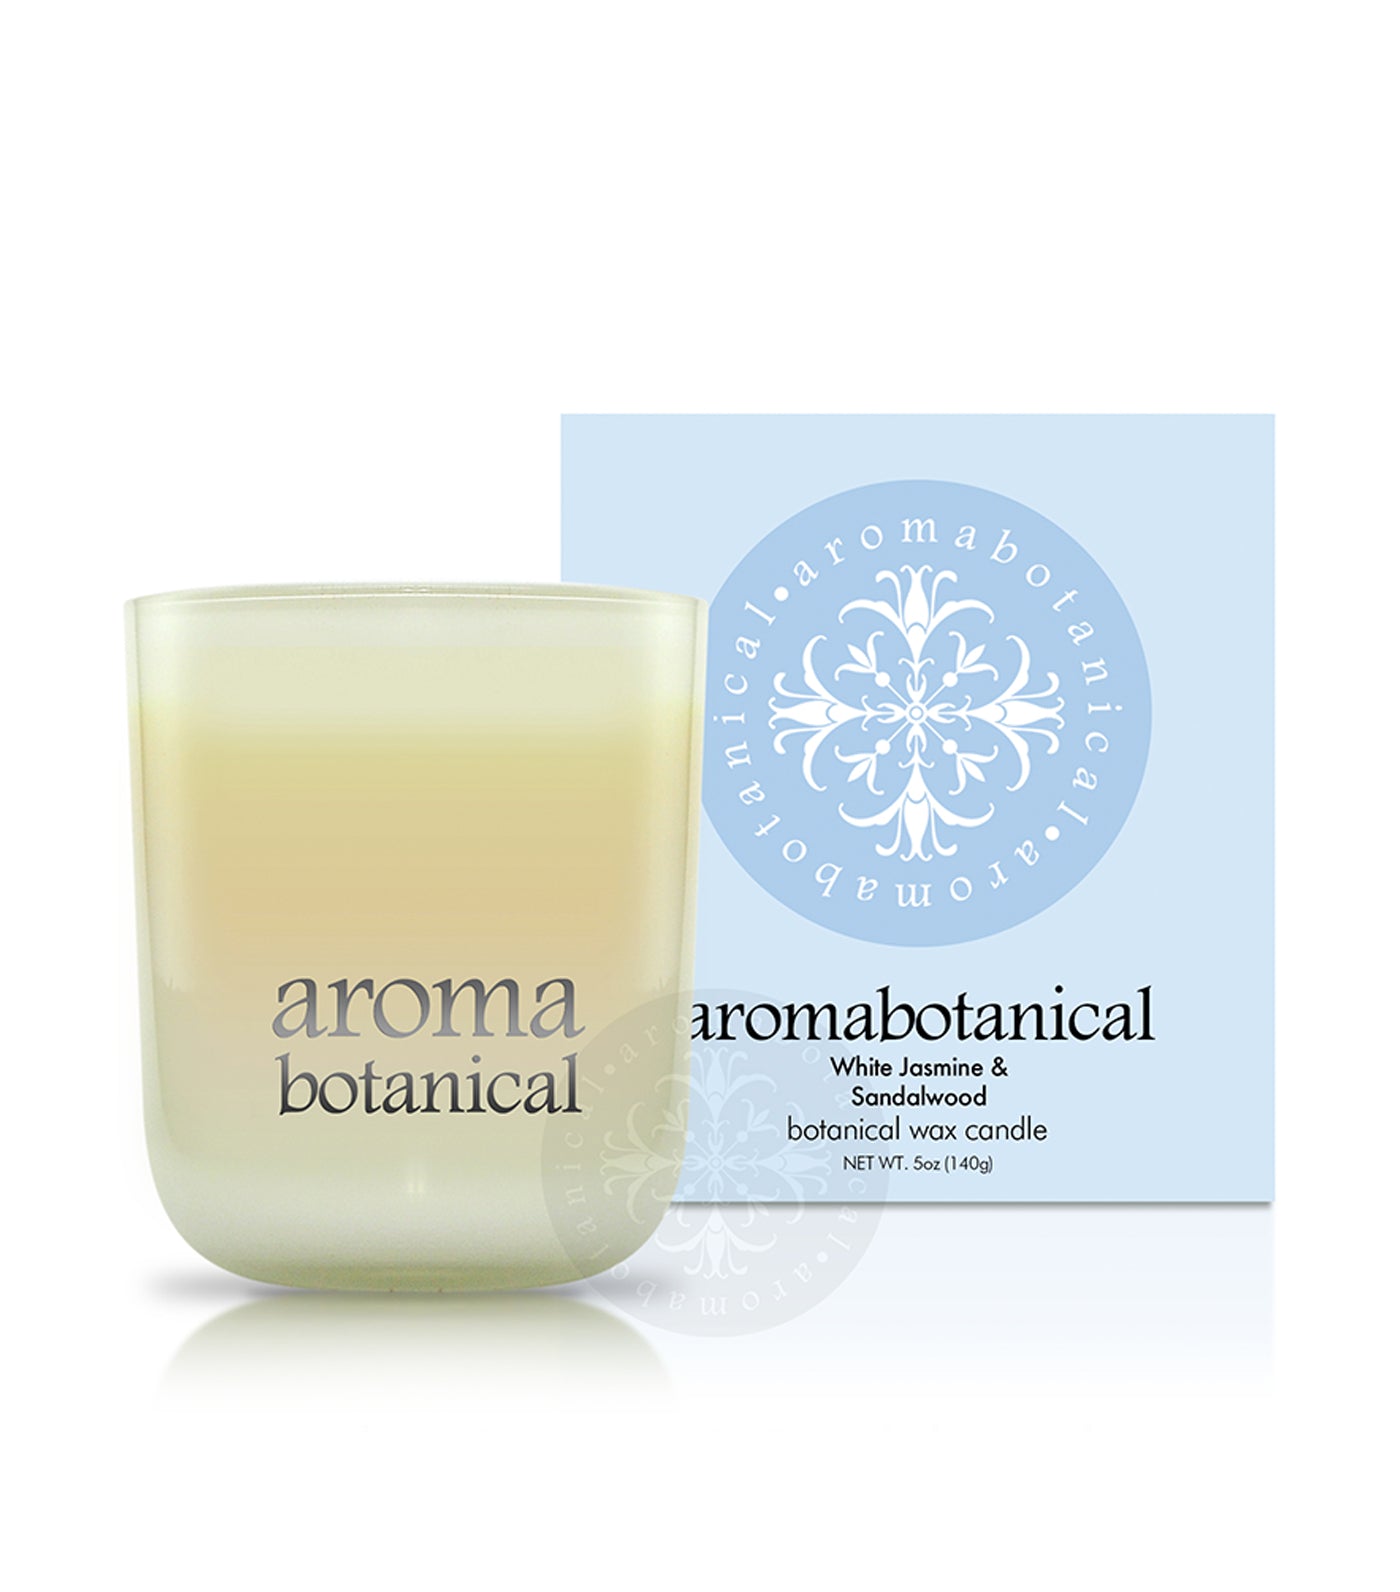 aromabotanical white jasmine & sandalwood 140g candle